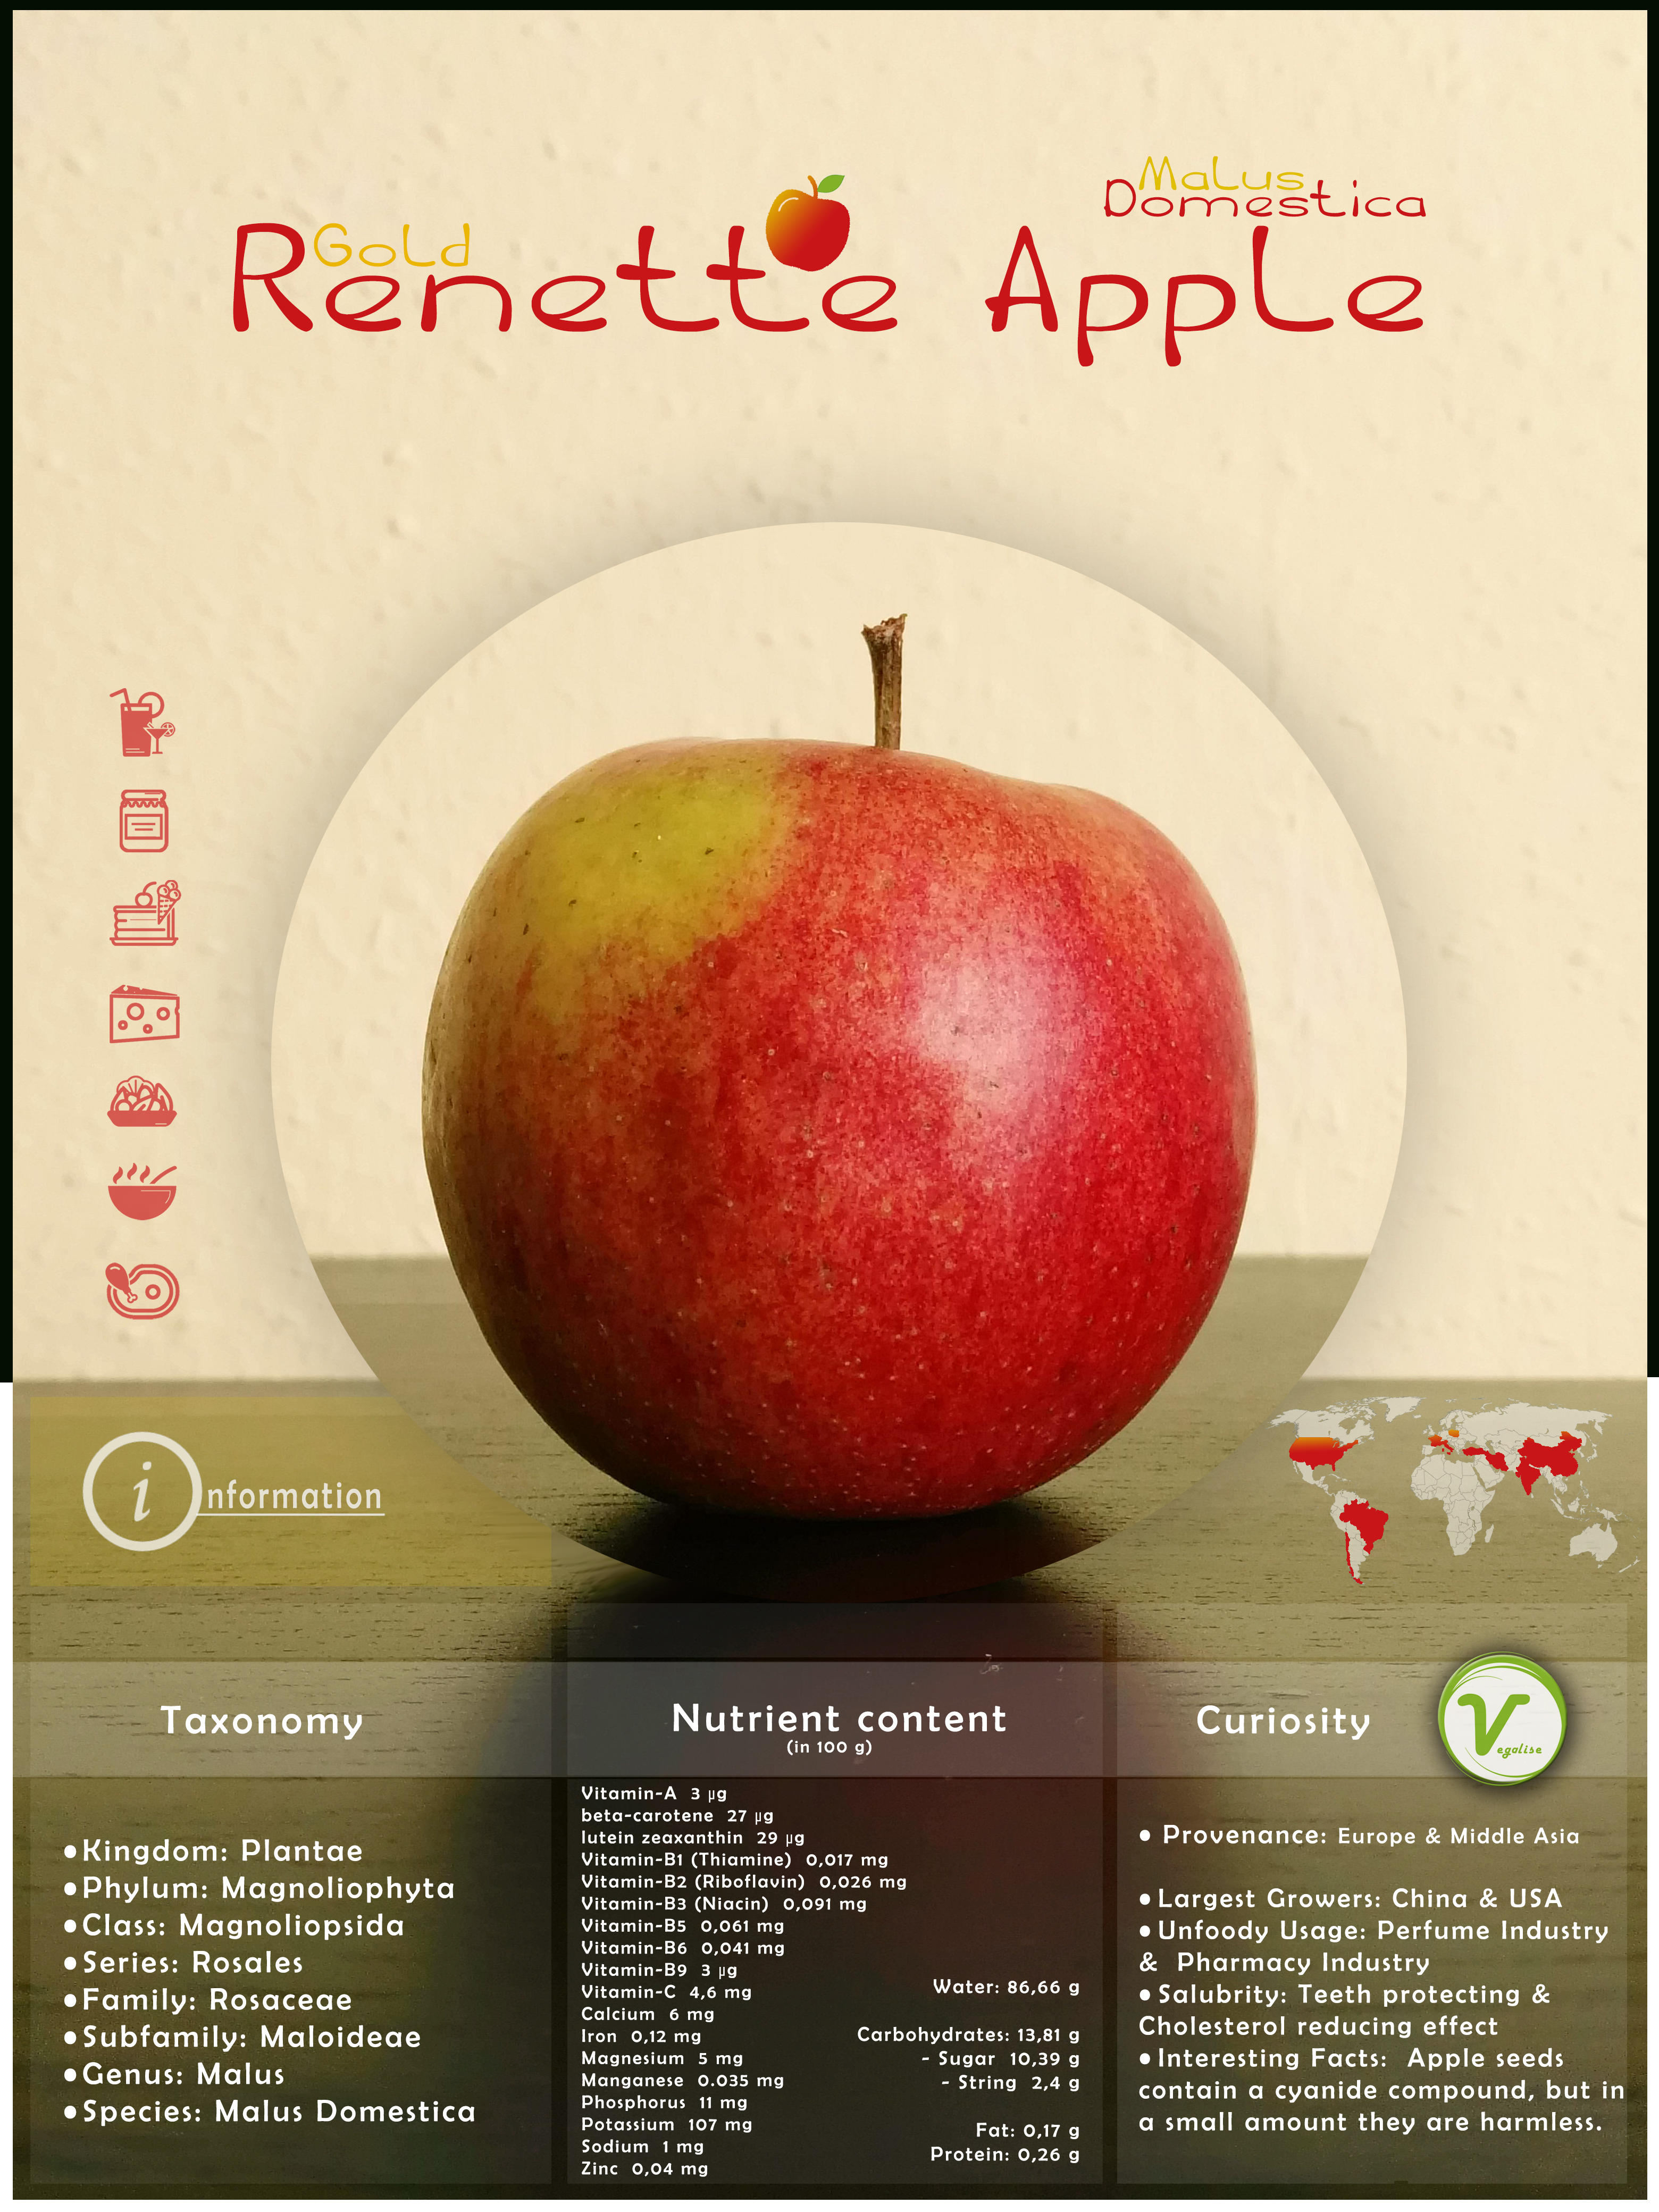 Gold Renette Apple